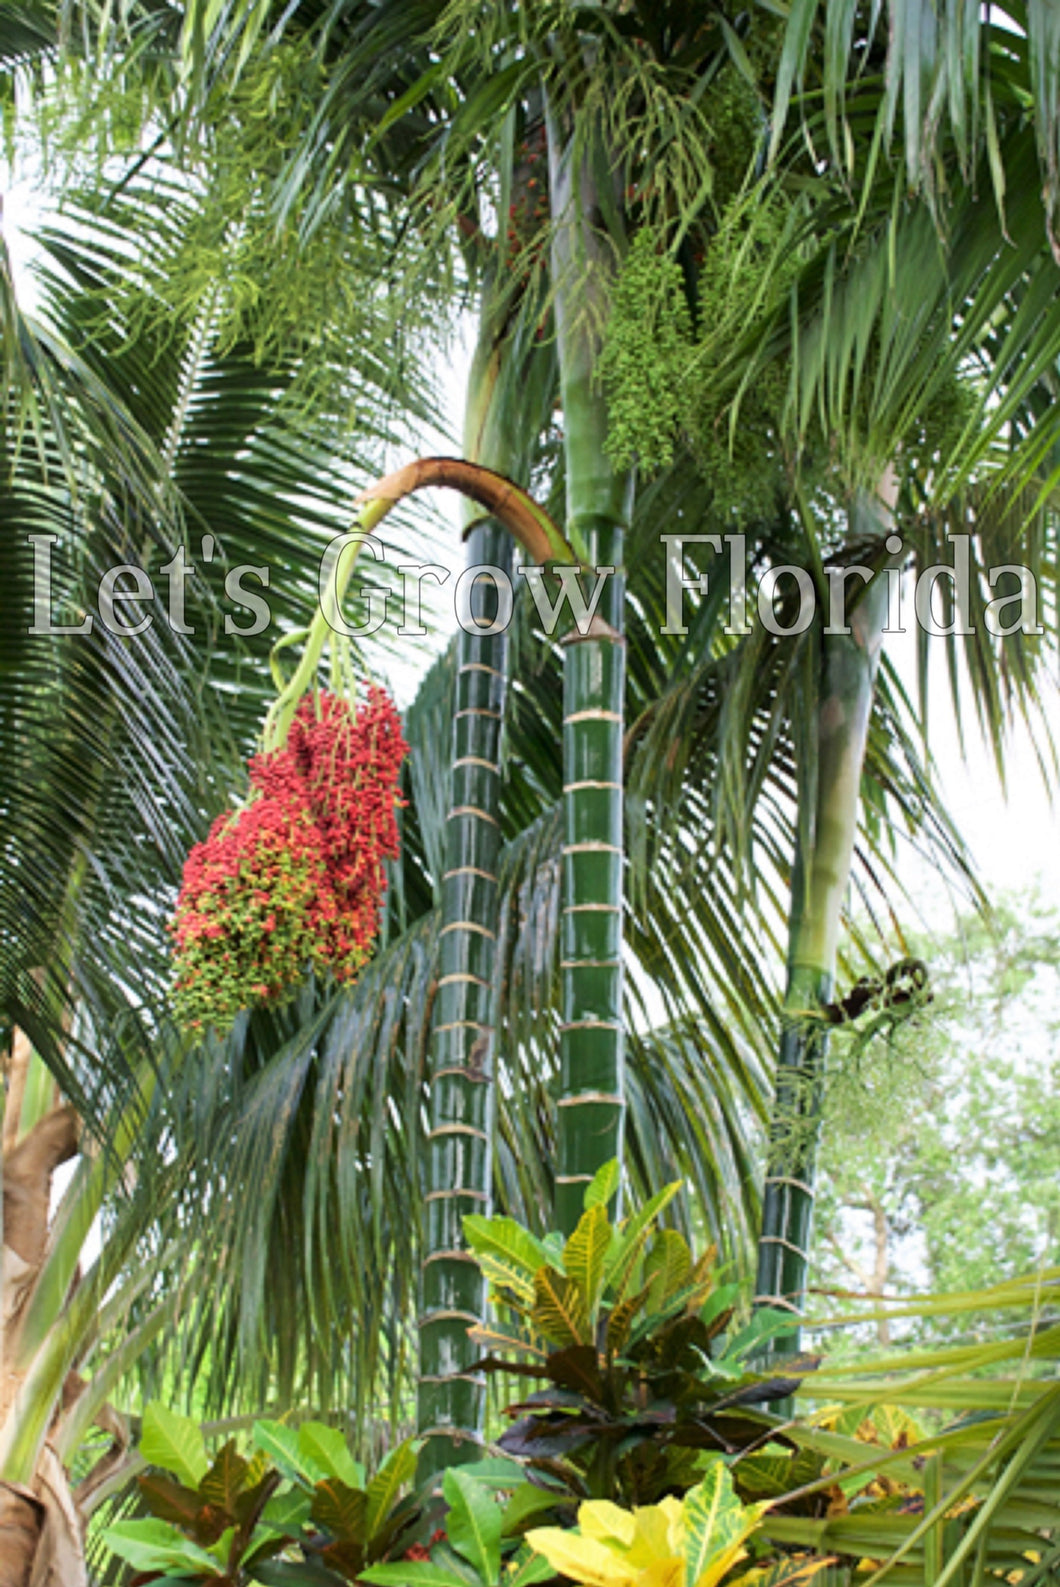 Chrysalidocarpus / Dypsis pembana Clustering Palm Tree